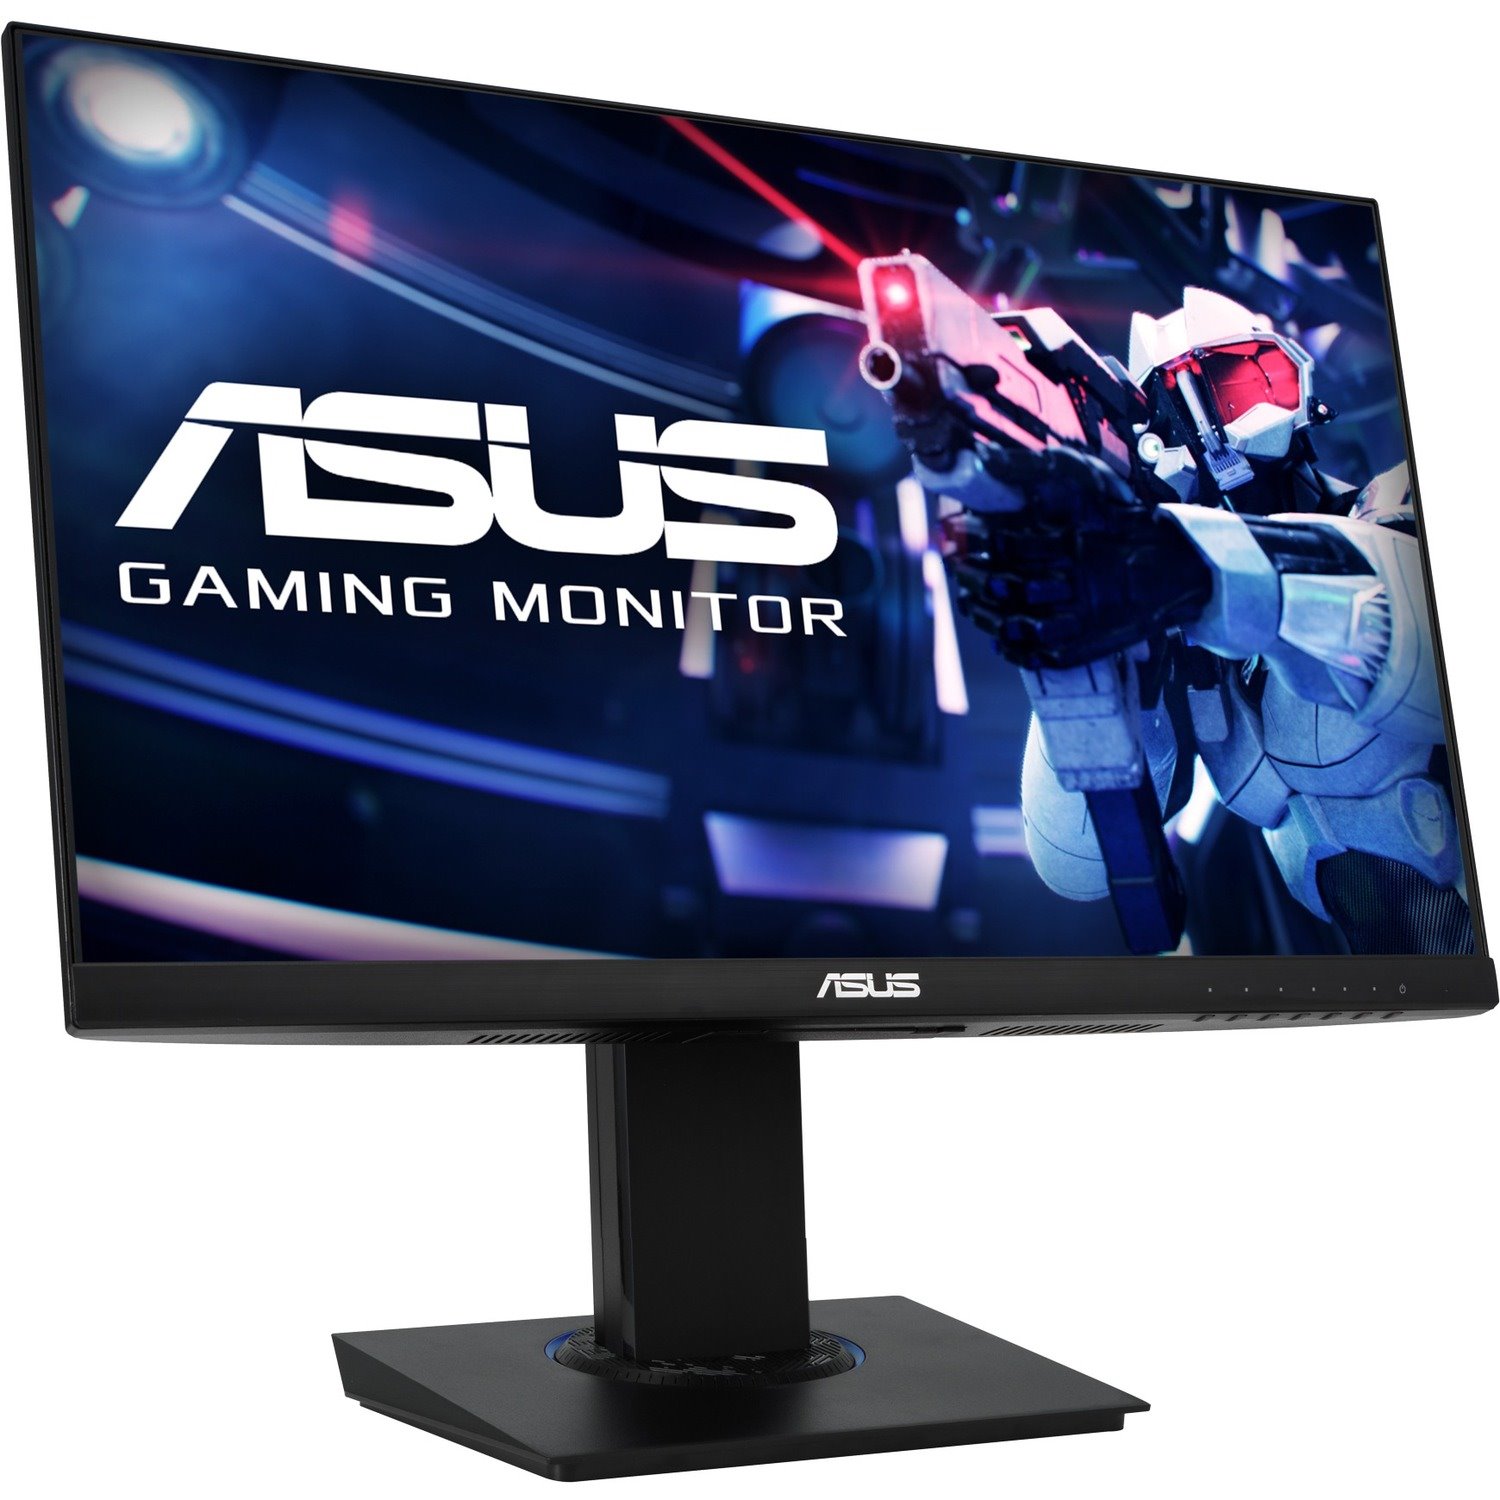 Asus VG246H 23.8" Full HD WLED Gaming LCD Monitor - 16:9 - Black